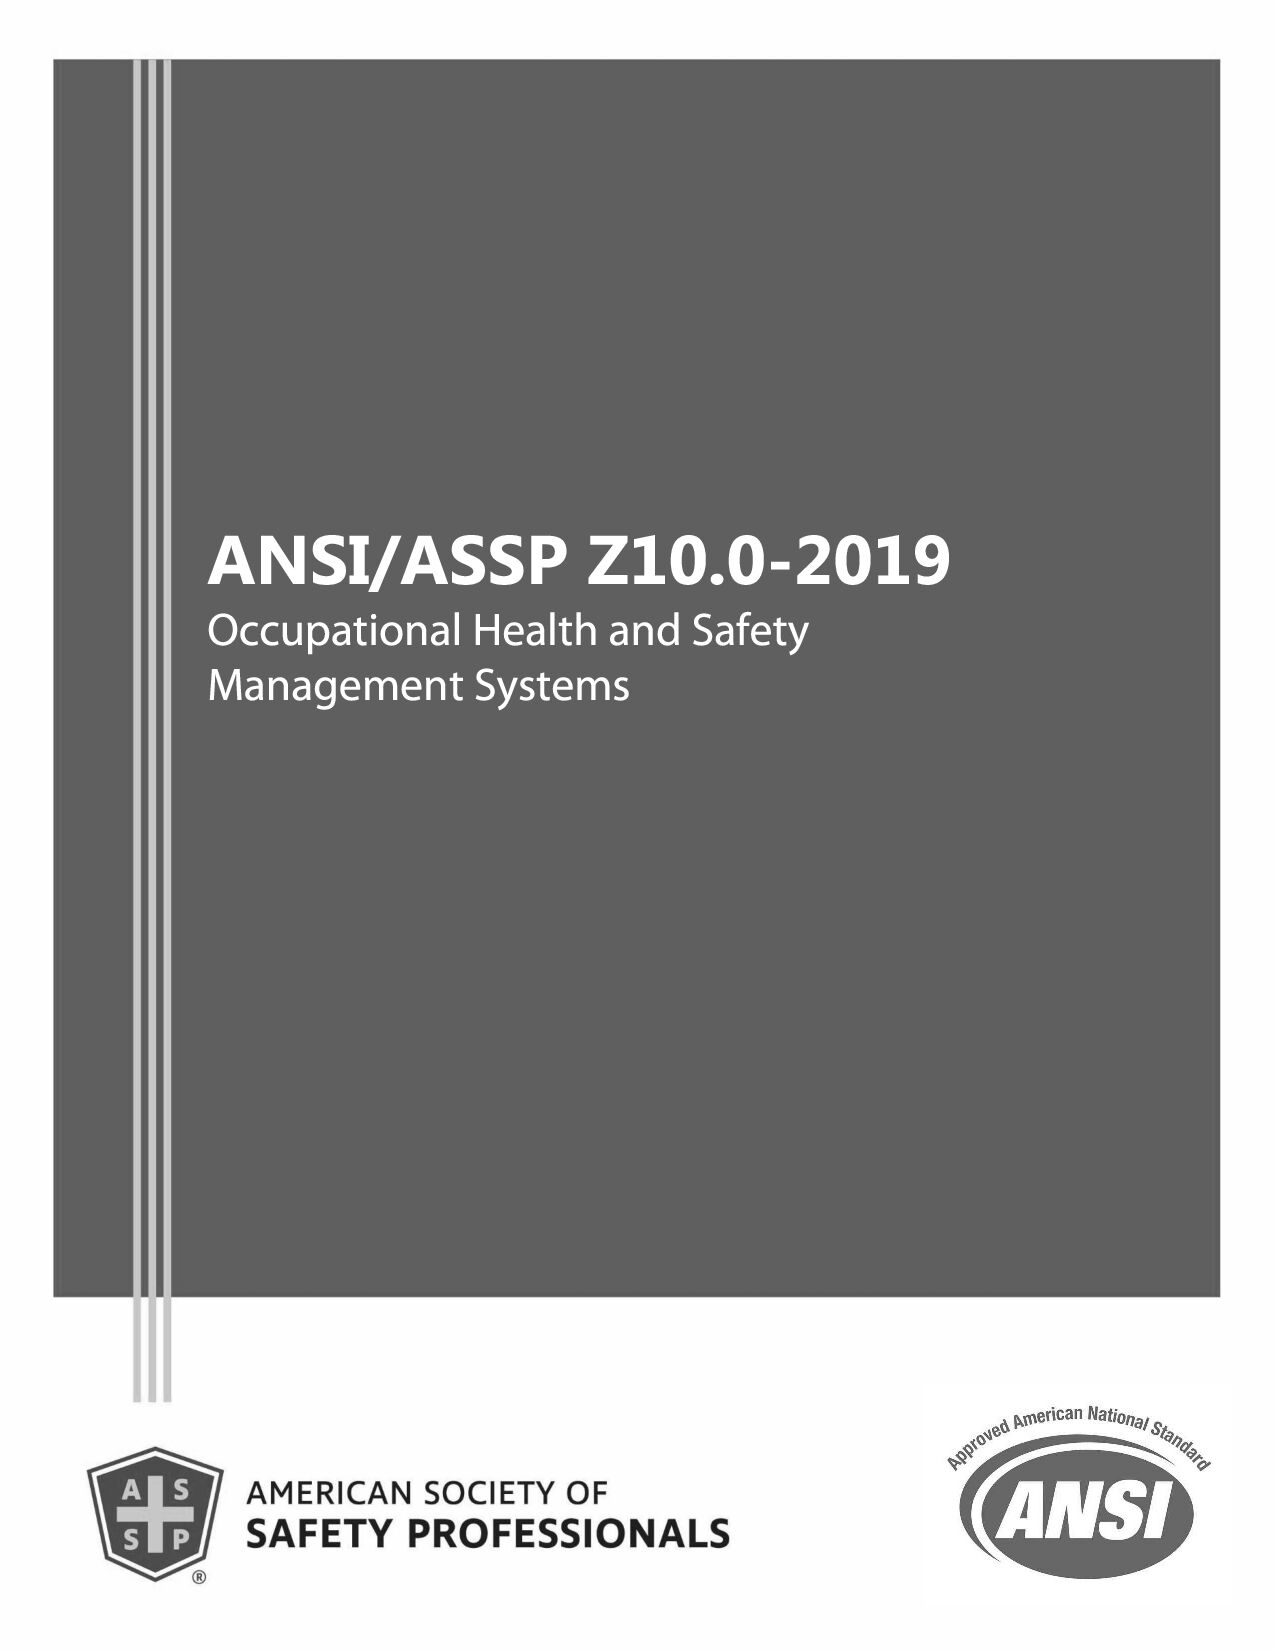 ANSI/ASSP Z10.0-2019